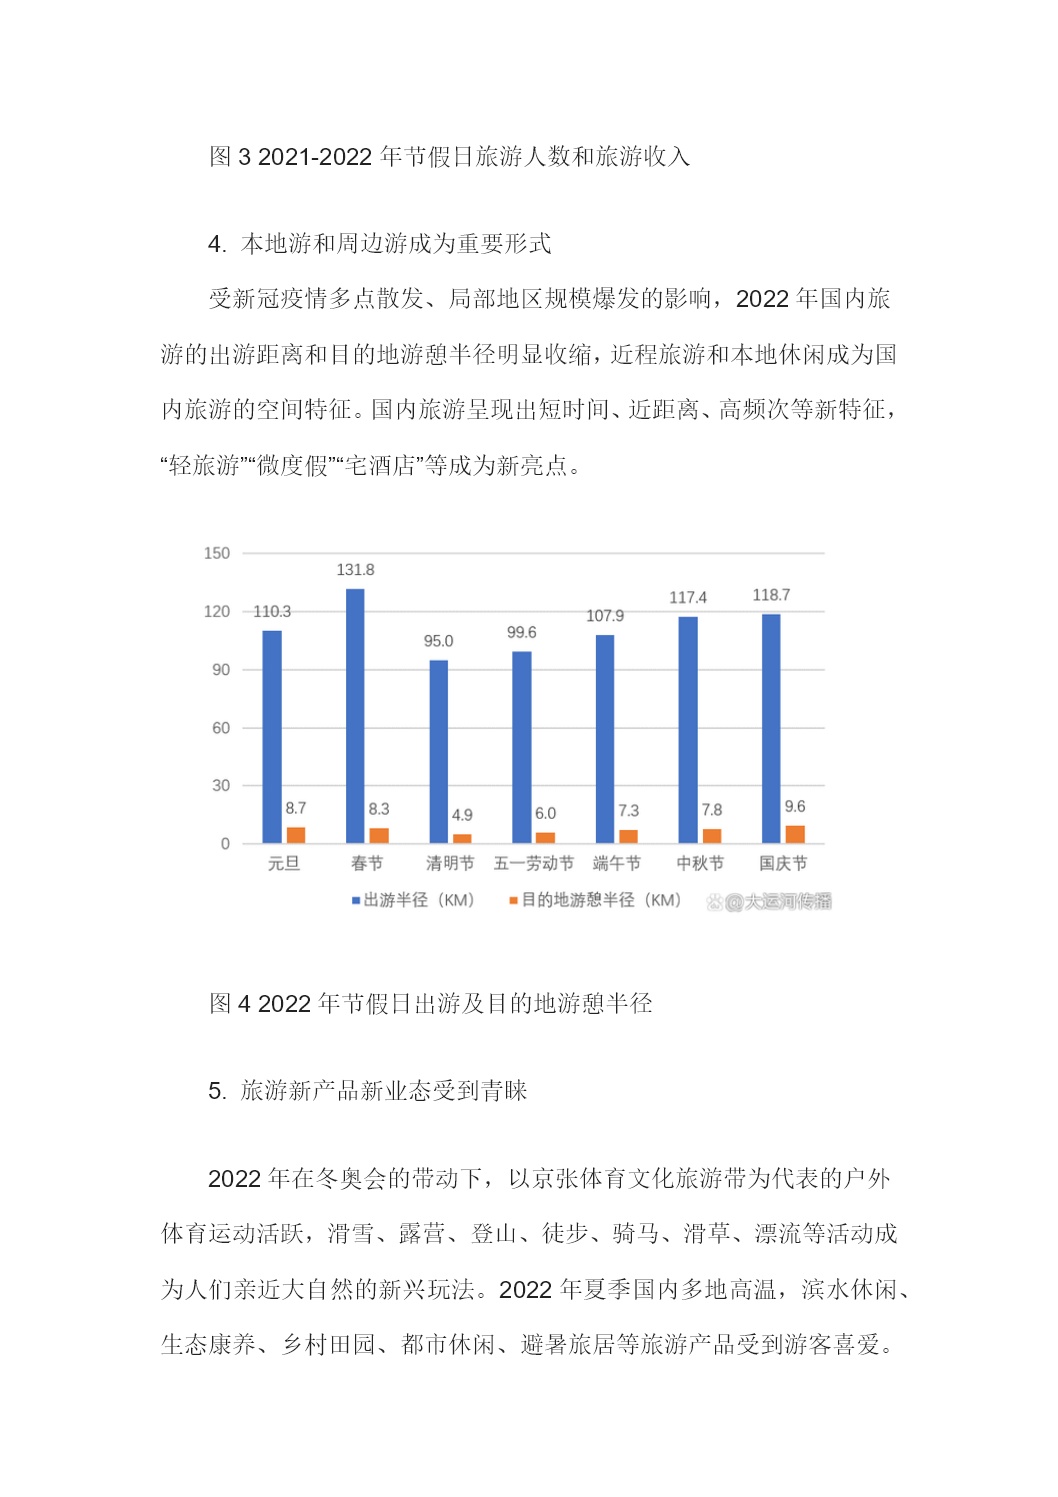 2020年中国旅游行业发展现状及趋势分析 疫情下旅游业恢复快_游客